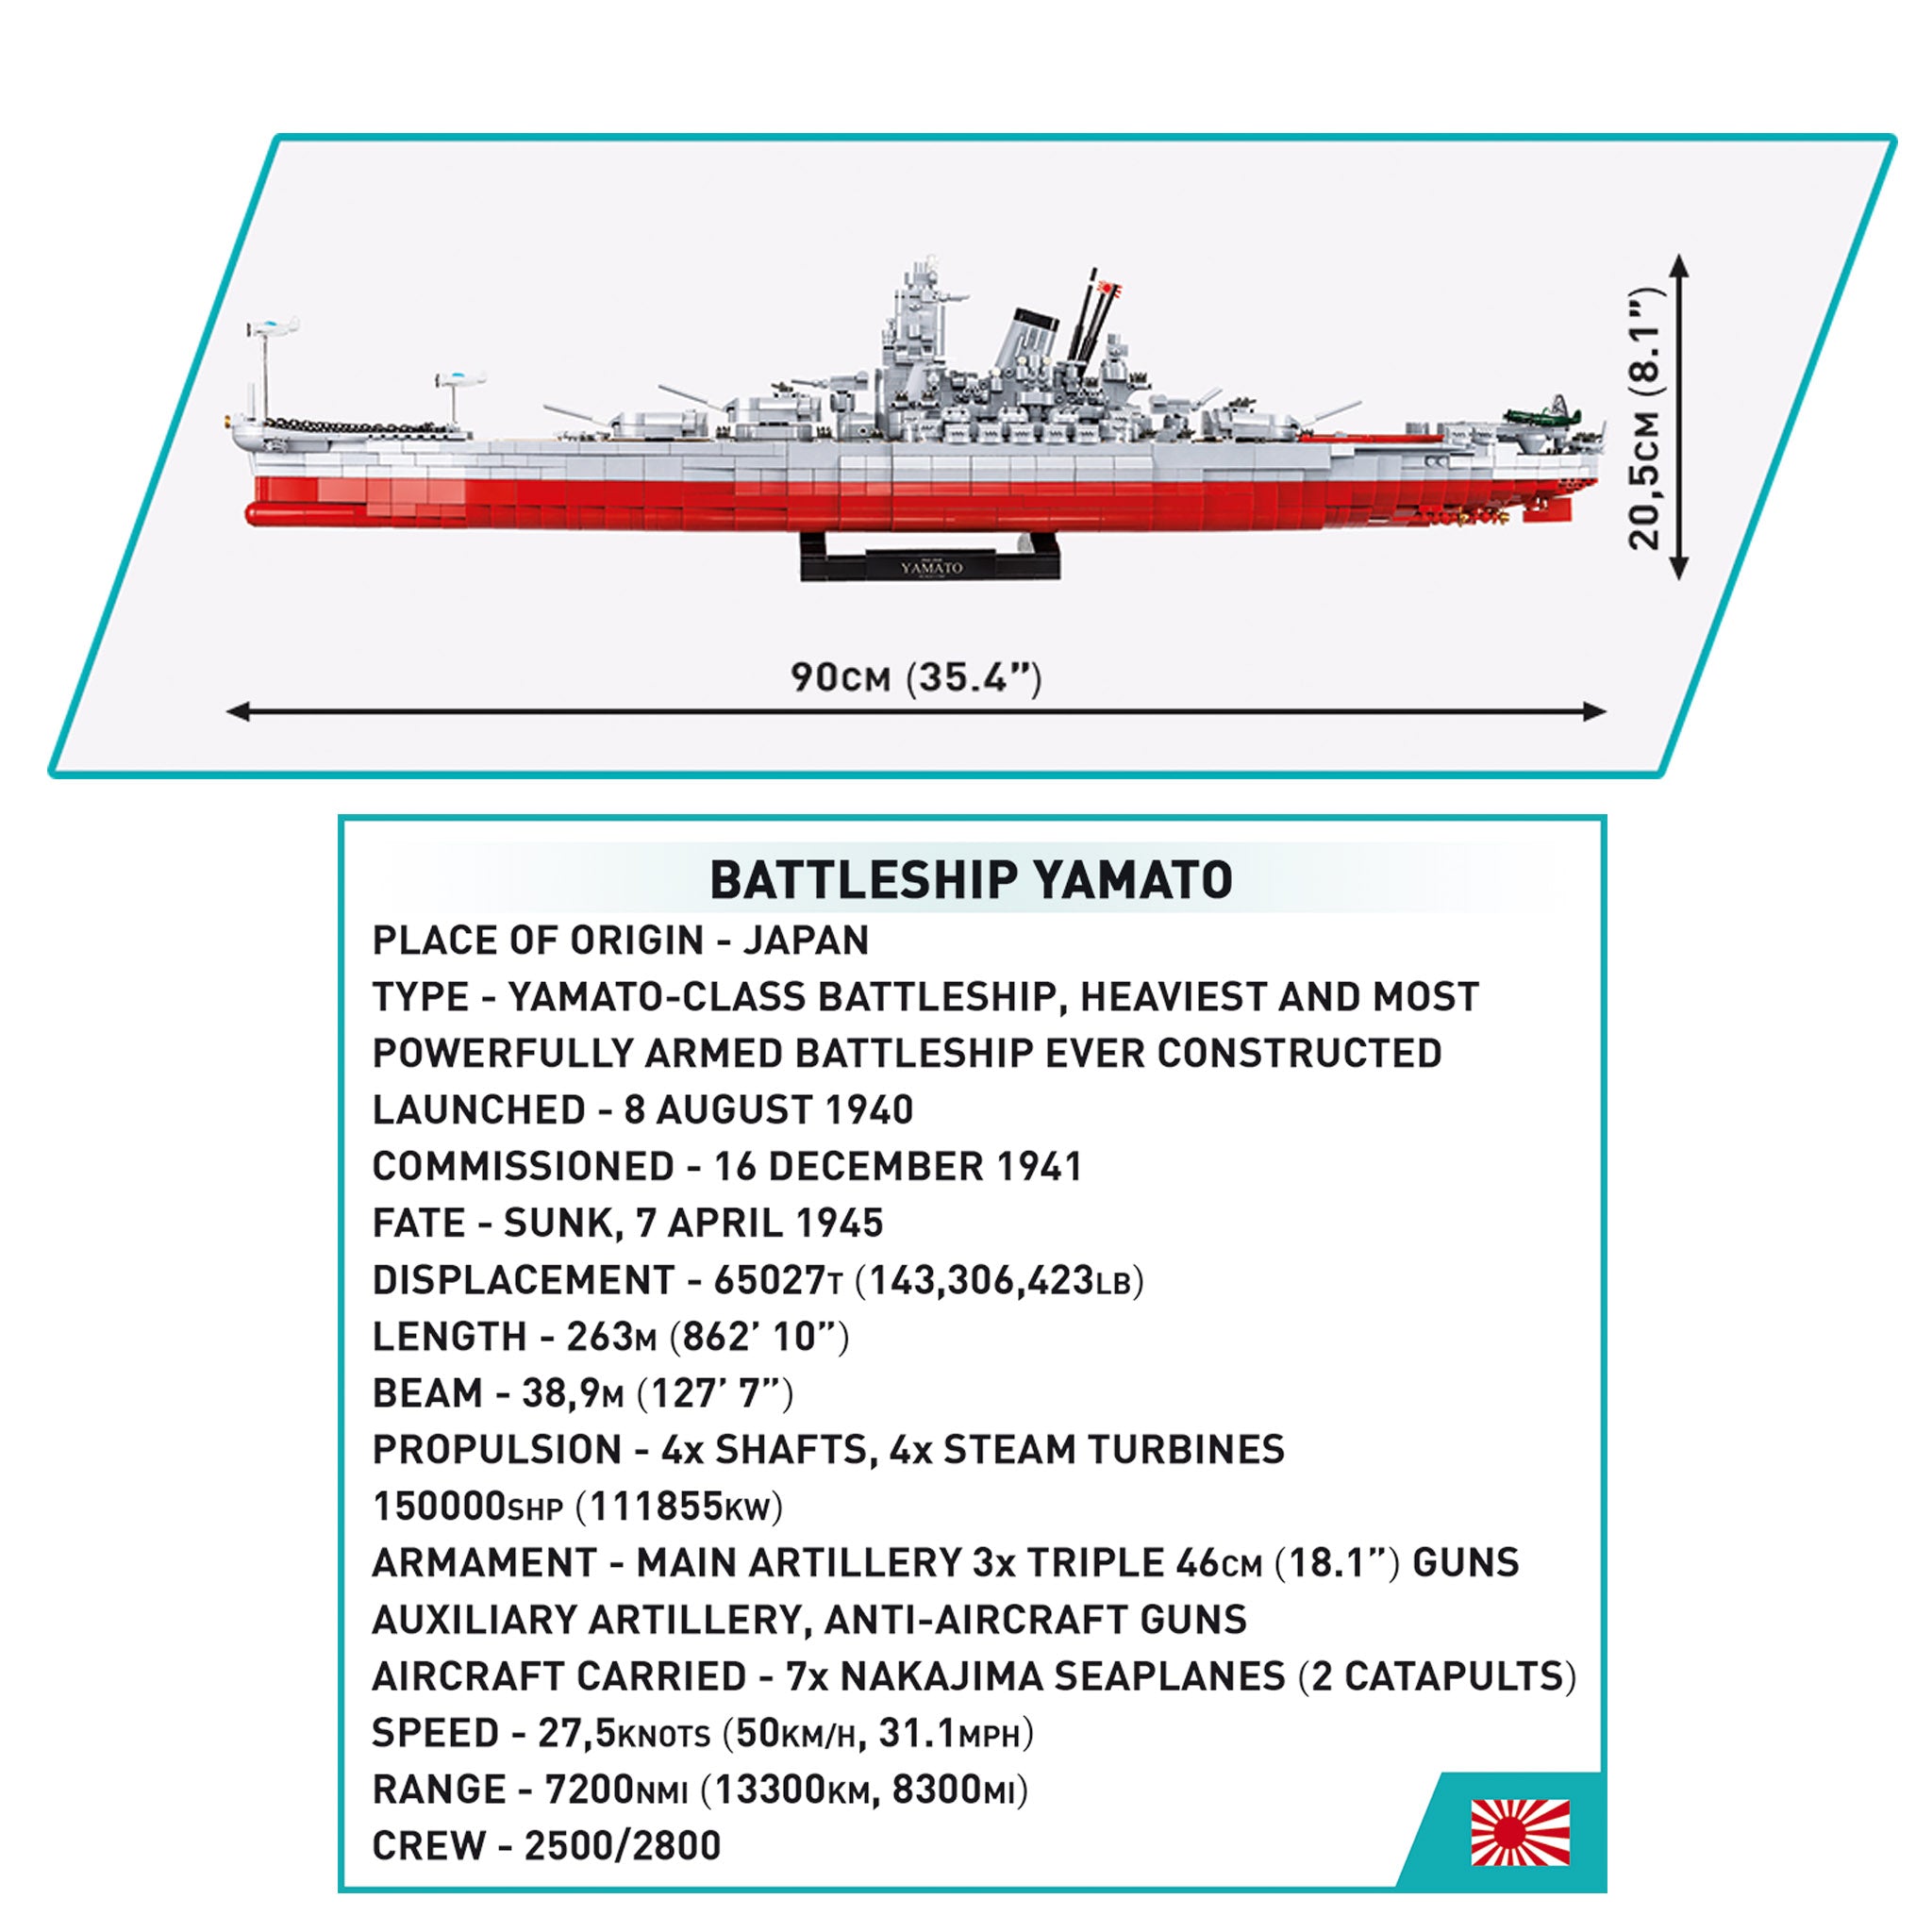 4832 - Battleship Yamato Executive Edition (Cobi)